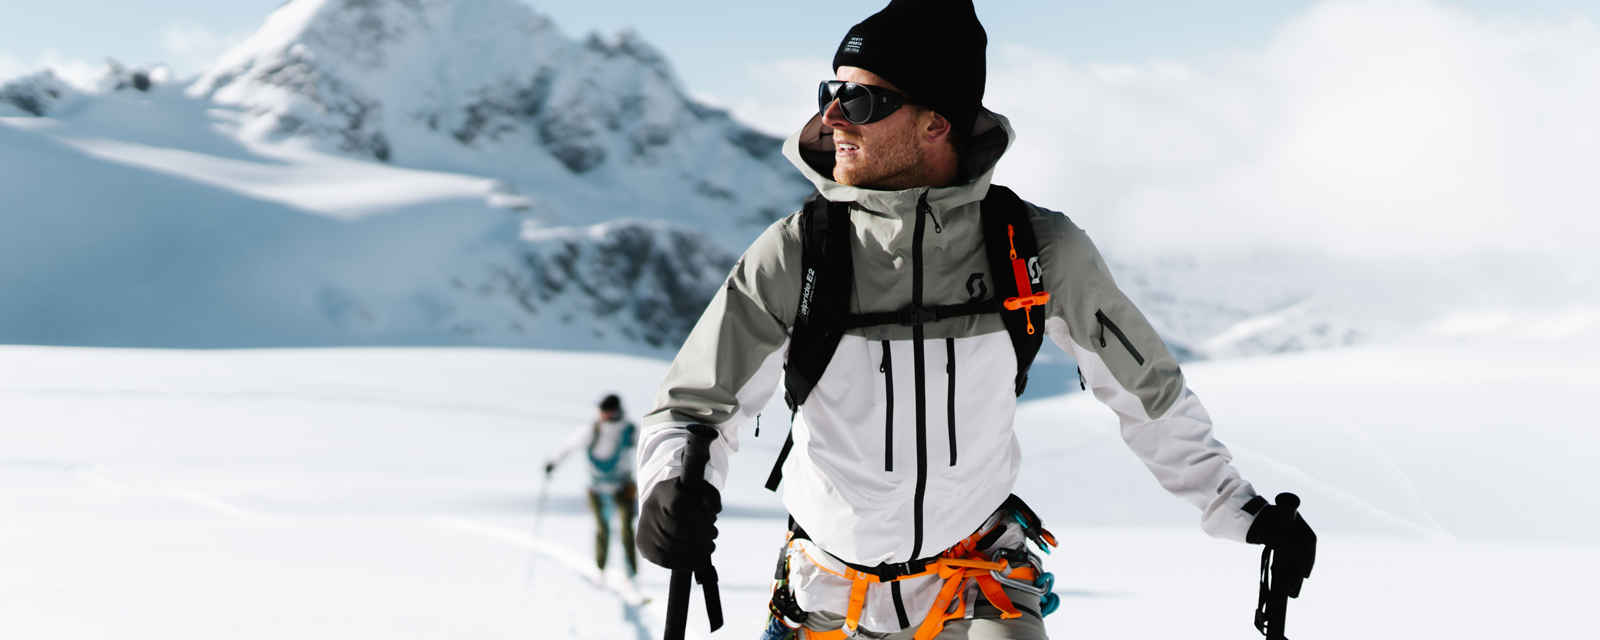 Veste de ski pour homme, blouson, doudoune ski homme randonnée imperméable